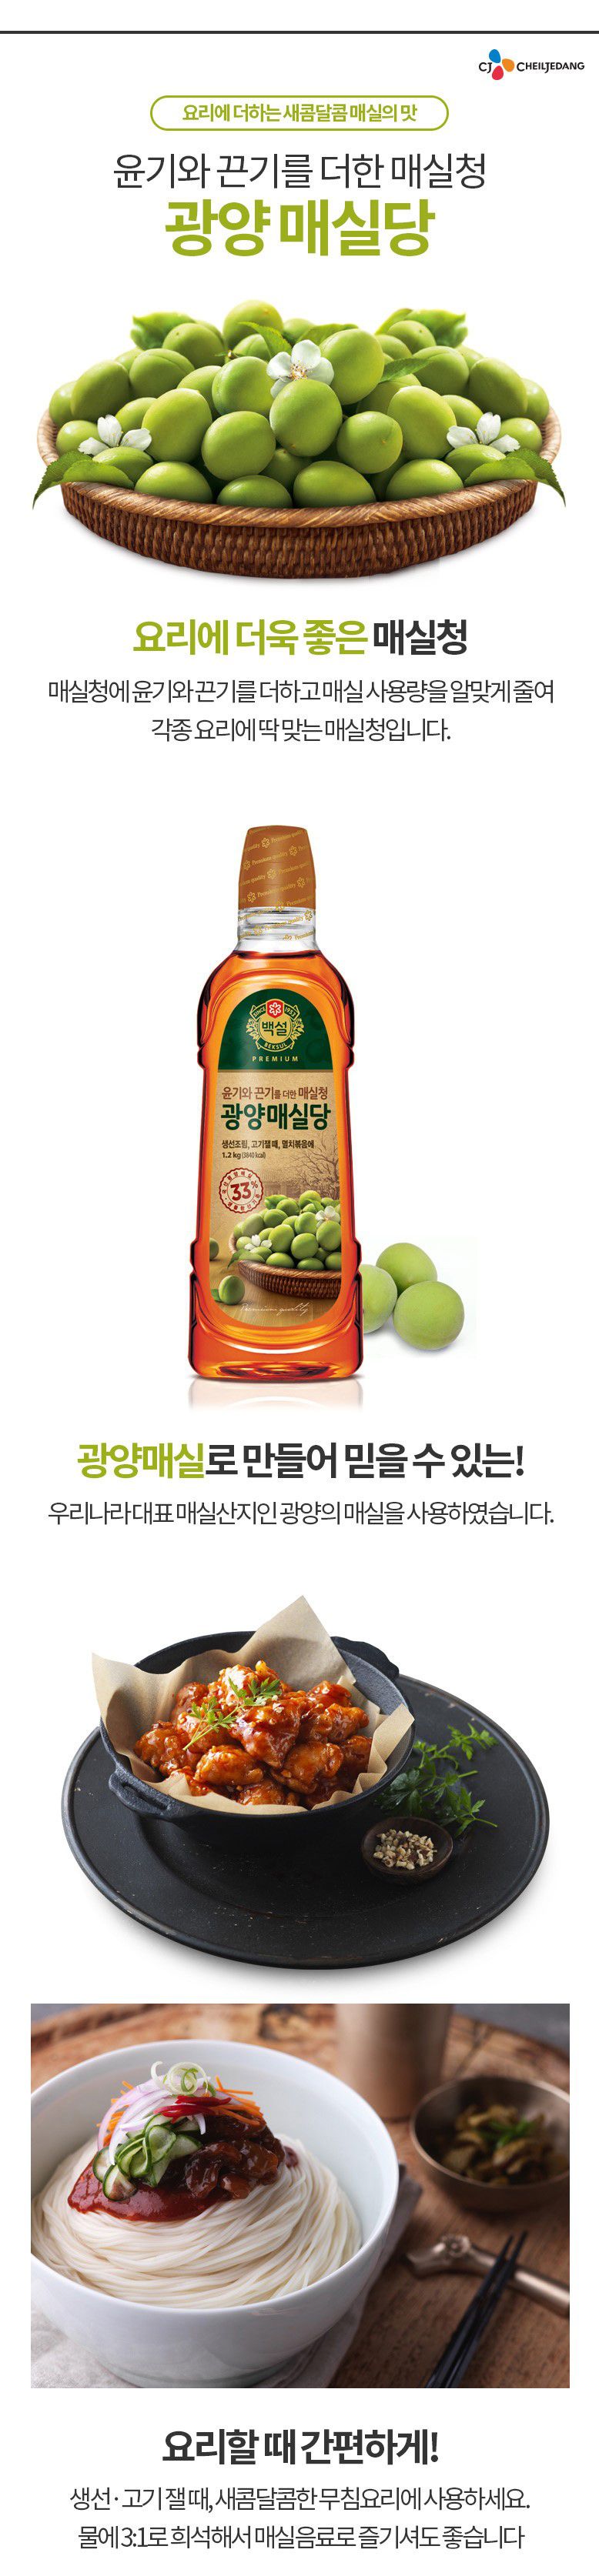 韓國食品-[CJ] 白雪 廣陽梅子糖 1.2kg